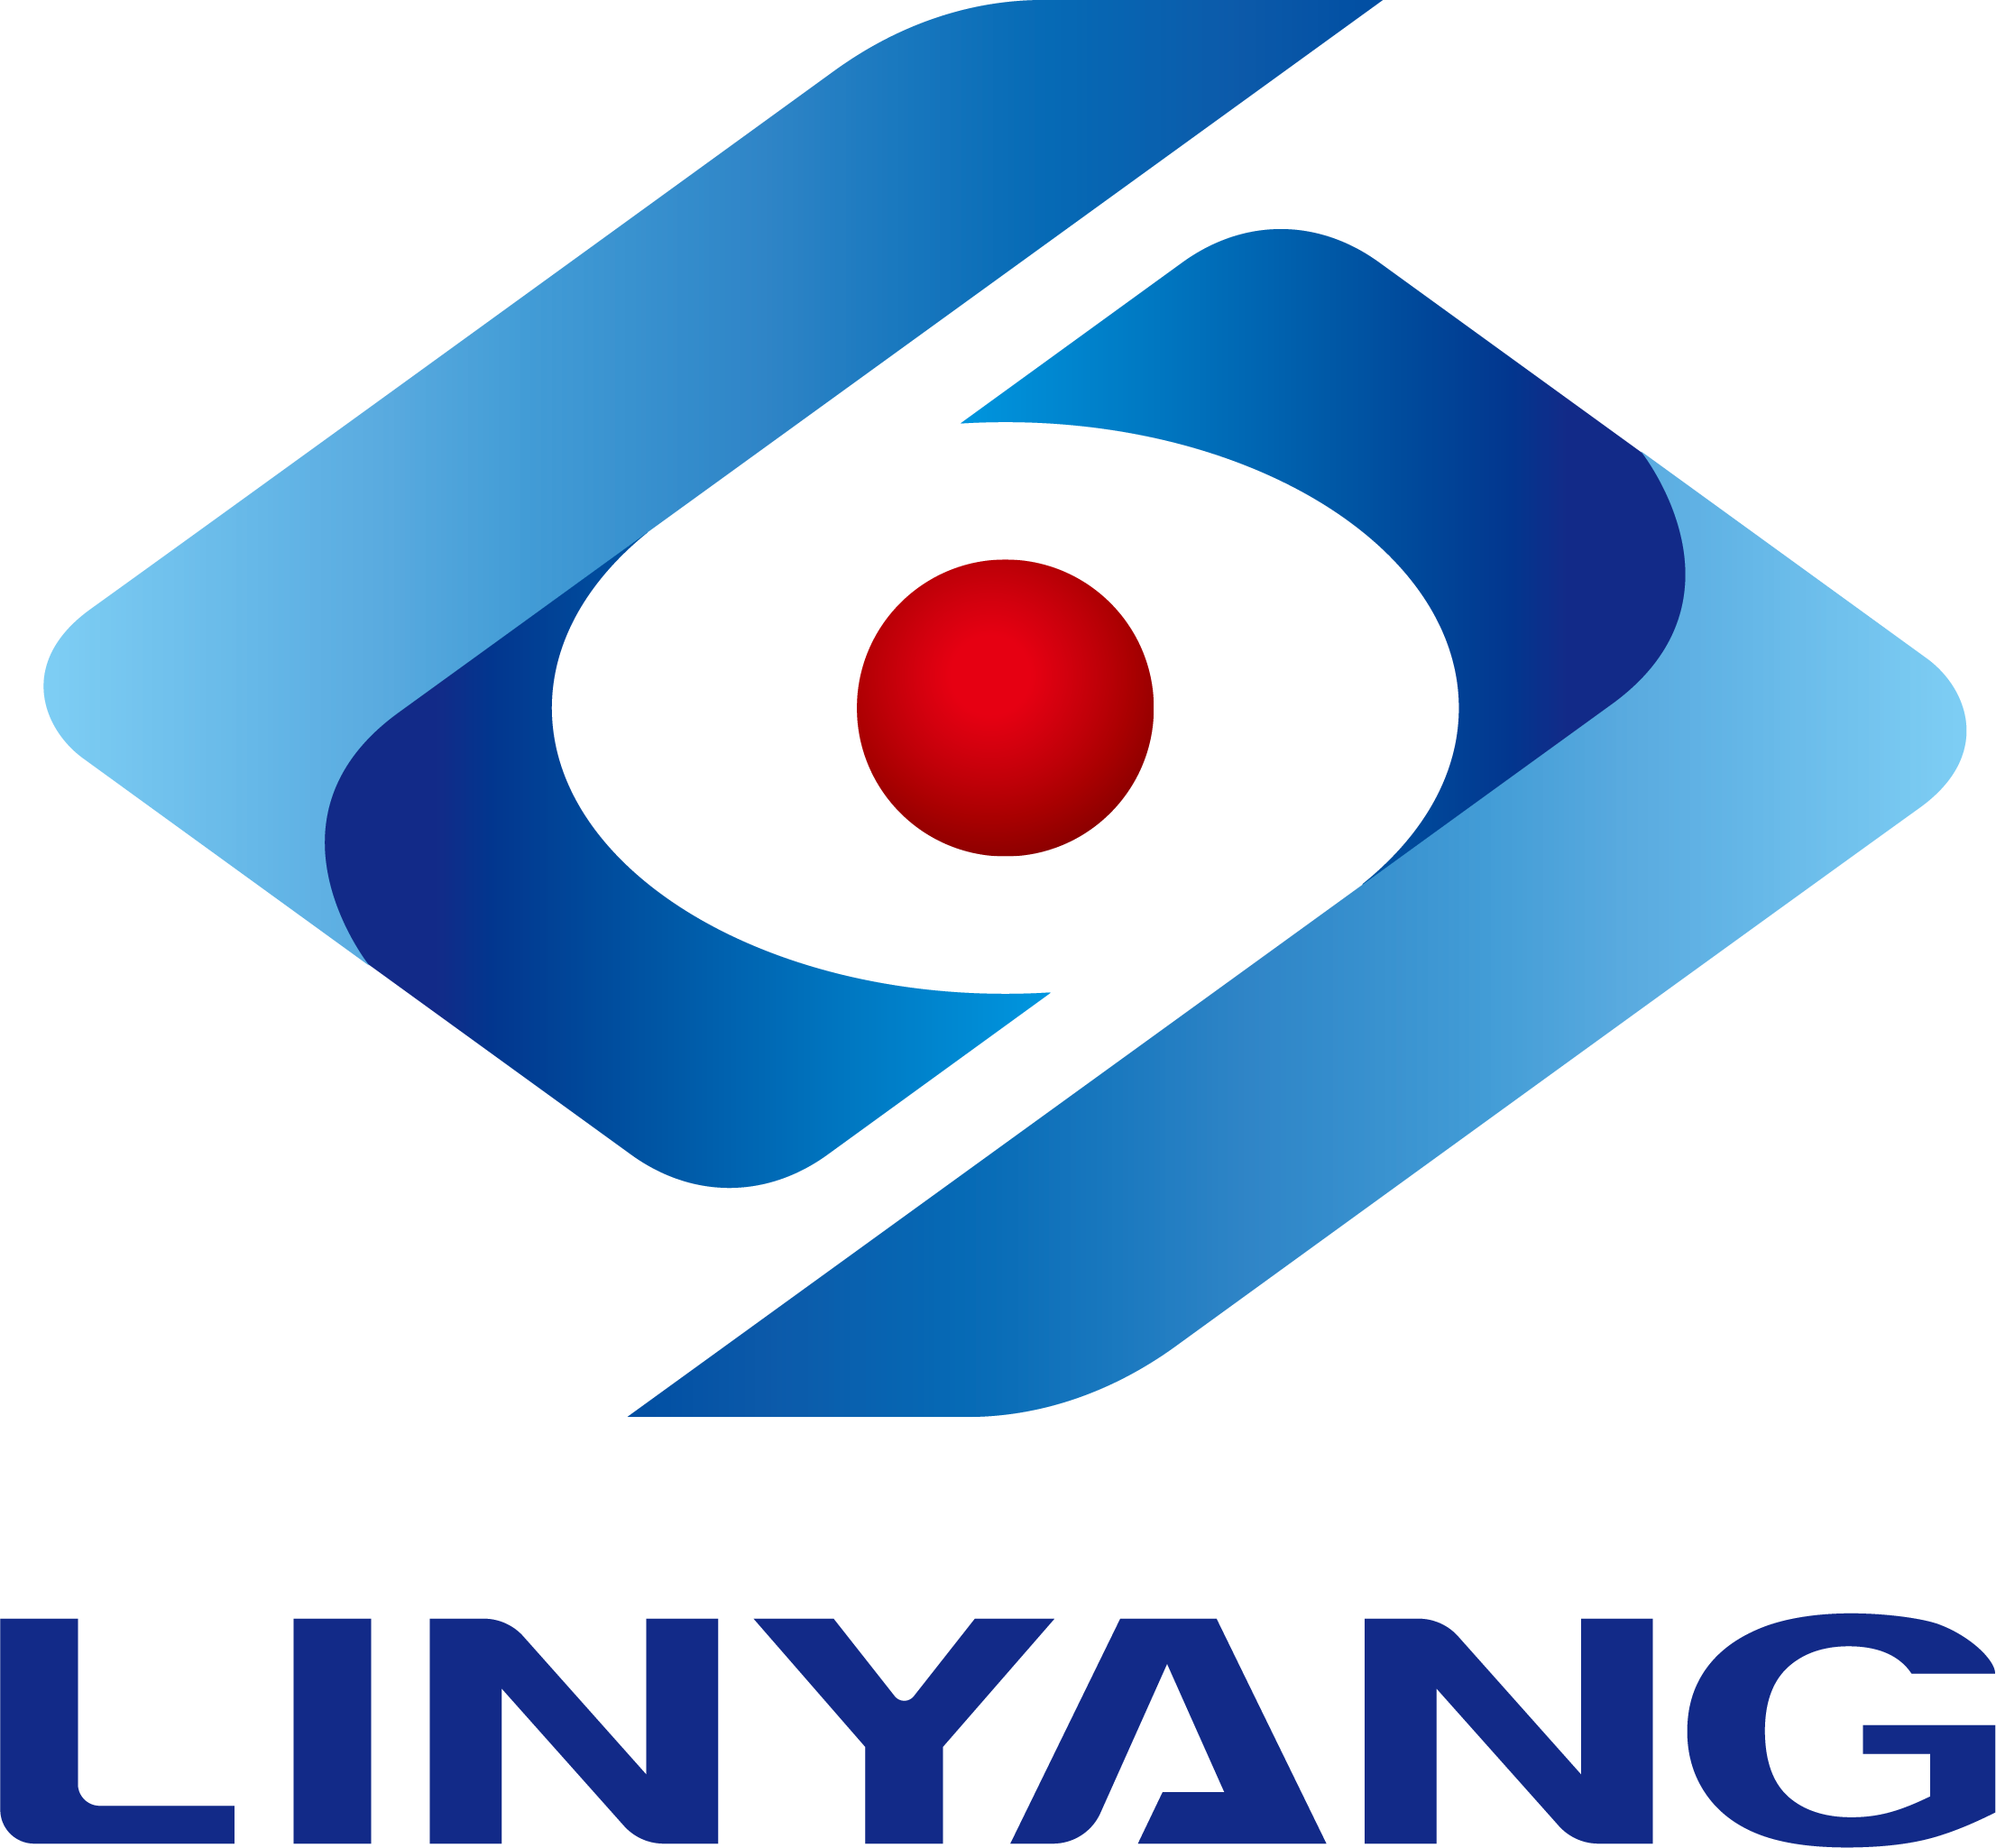 Linyang hà uttenutu l'appruvazioni di prughjetti PV cumulativi di più di 1GW